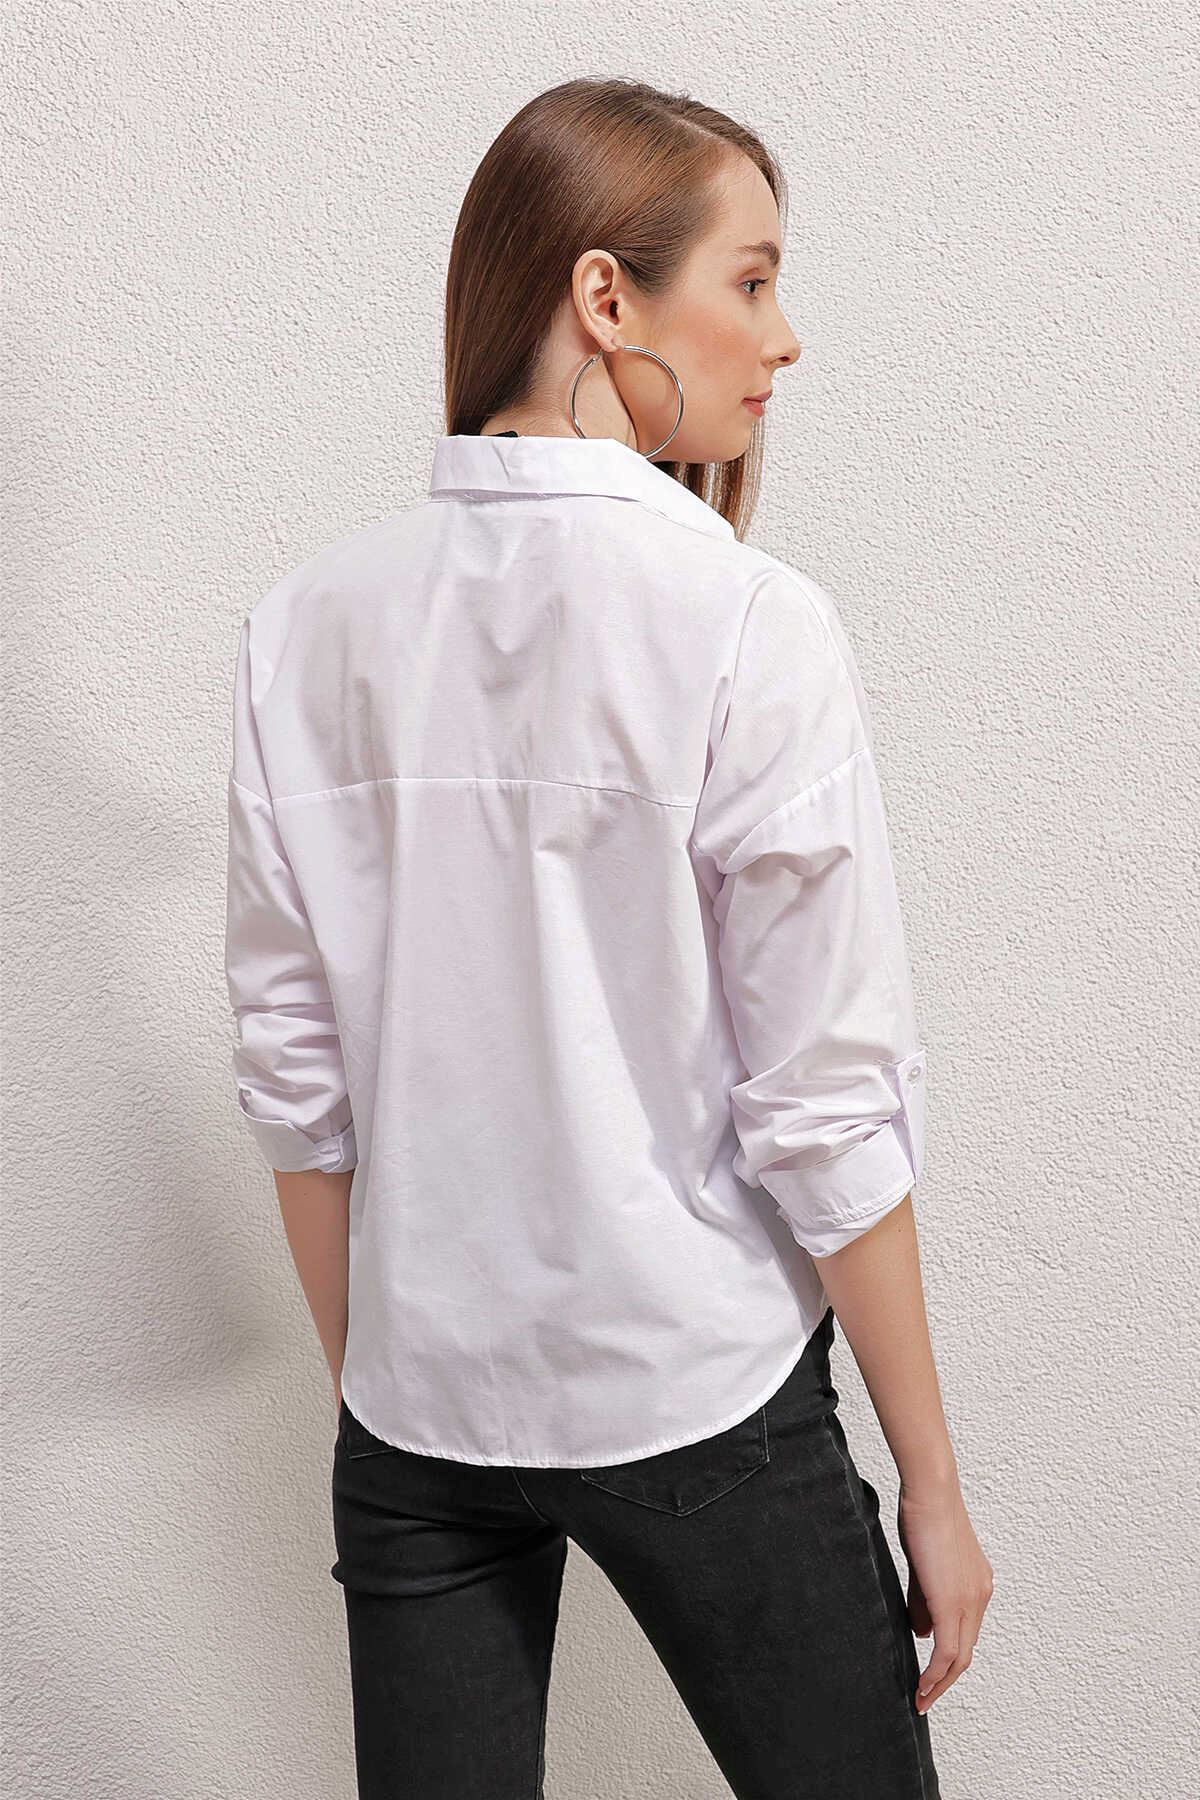 Giyinsen Kadın Beyaz Gömlek - 24YM21000032